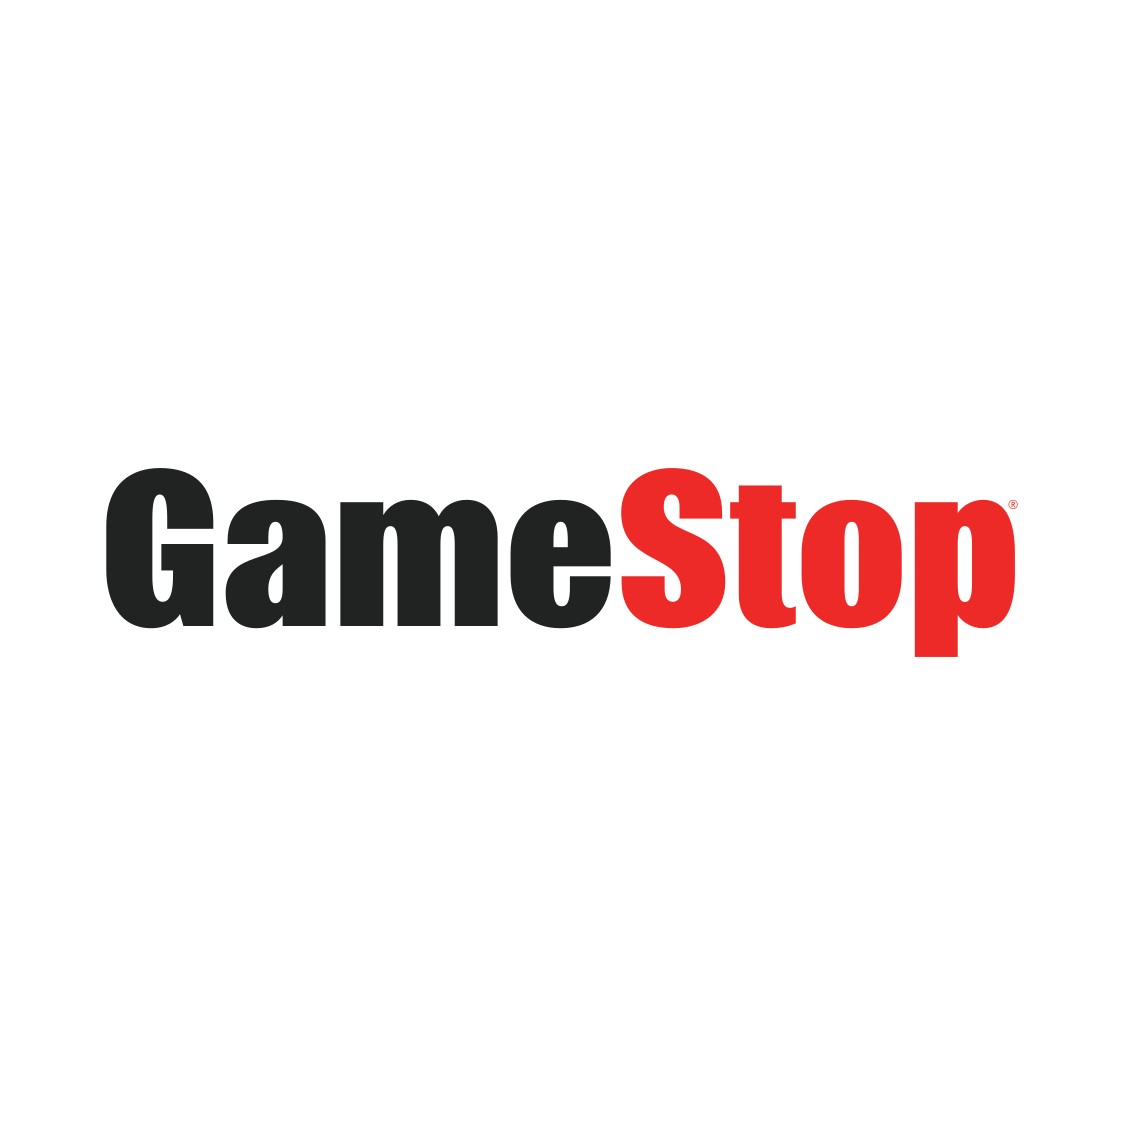 Logo EB Games - GameStop